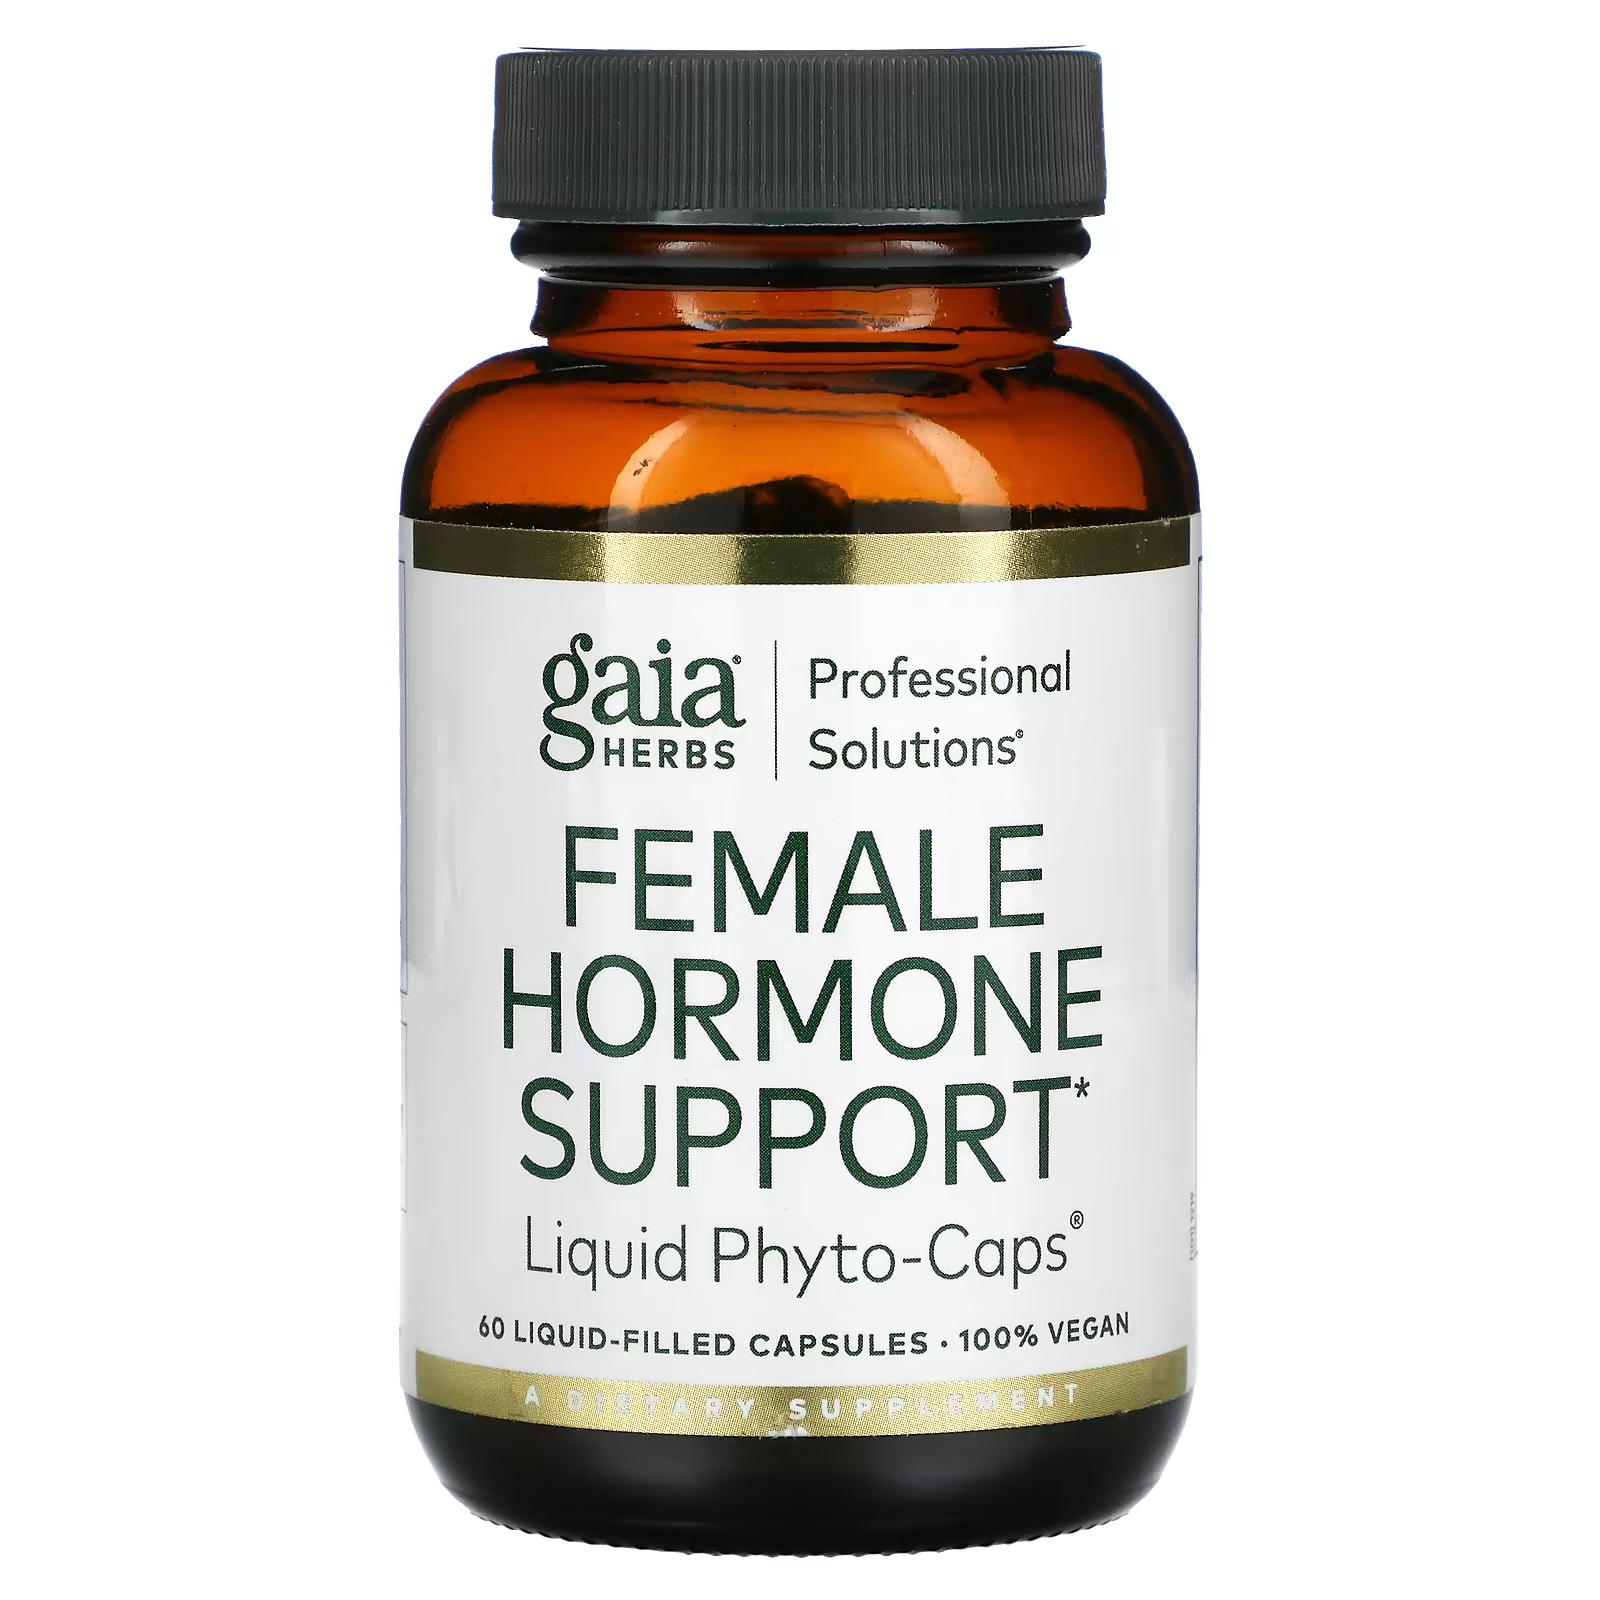 Пищевая добавка Gaia Herbs Professional Solutions поддержка женских гормонов, 60 капсул